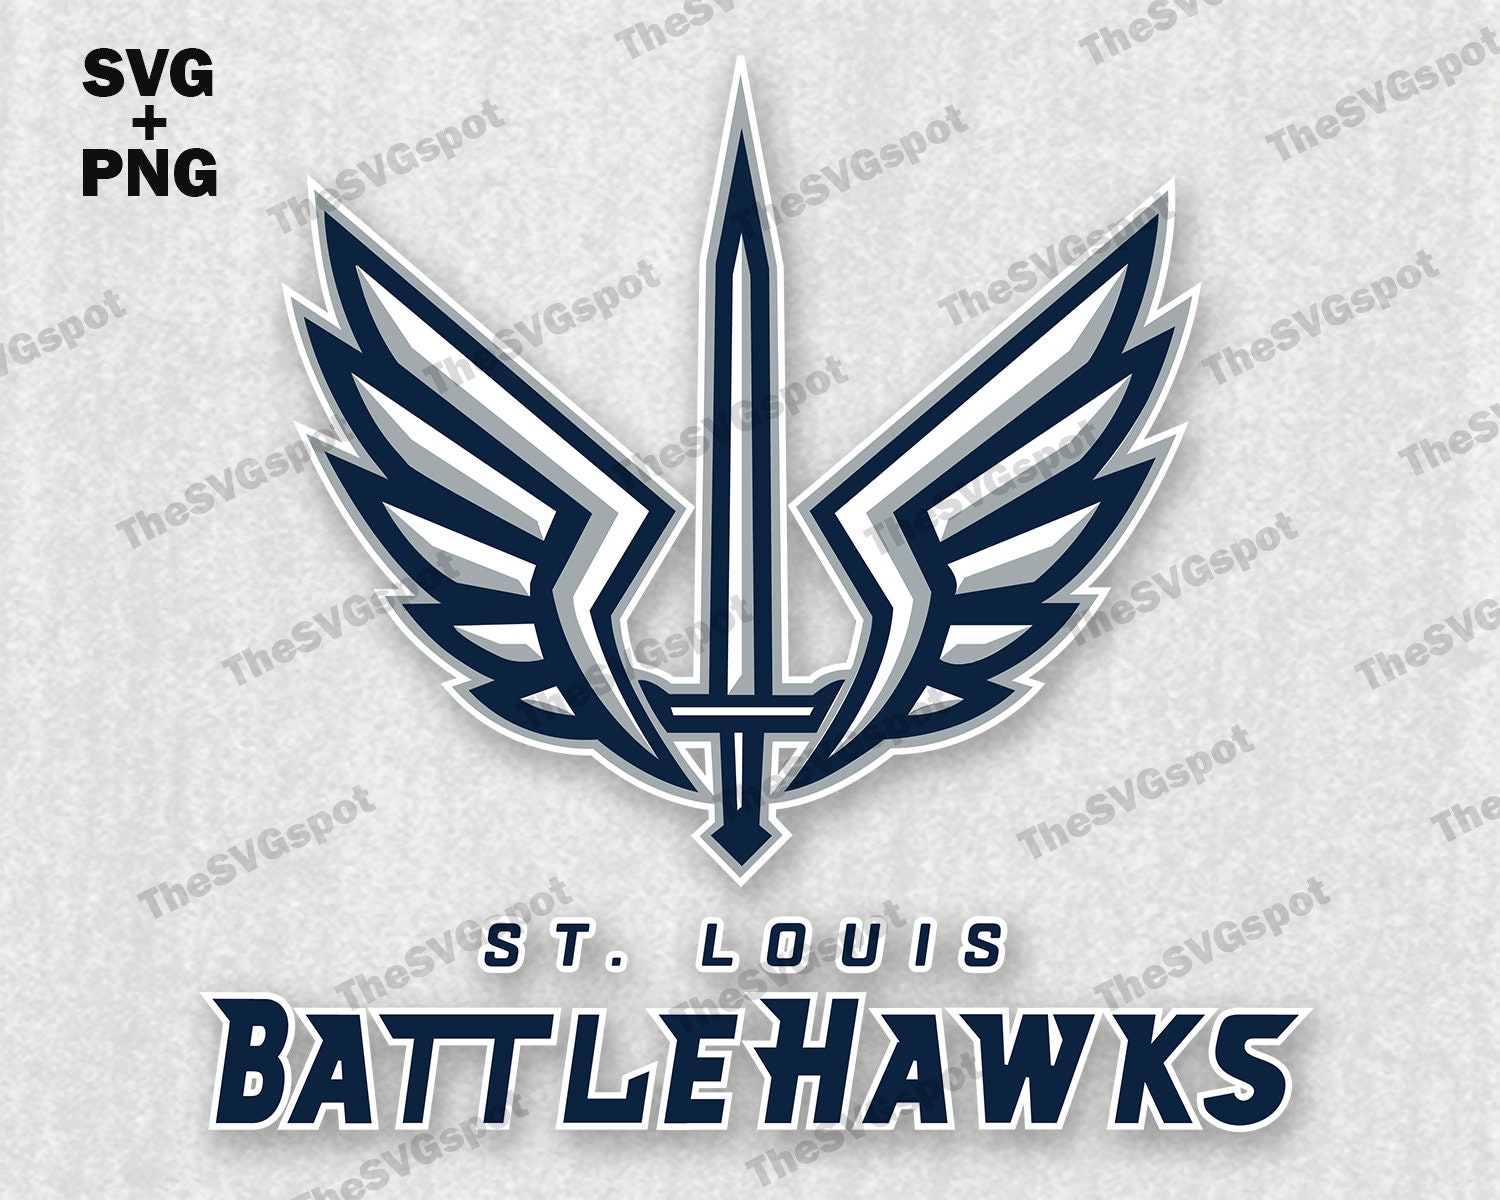 St. Louis Battlehawks